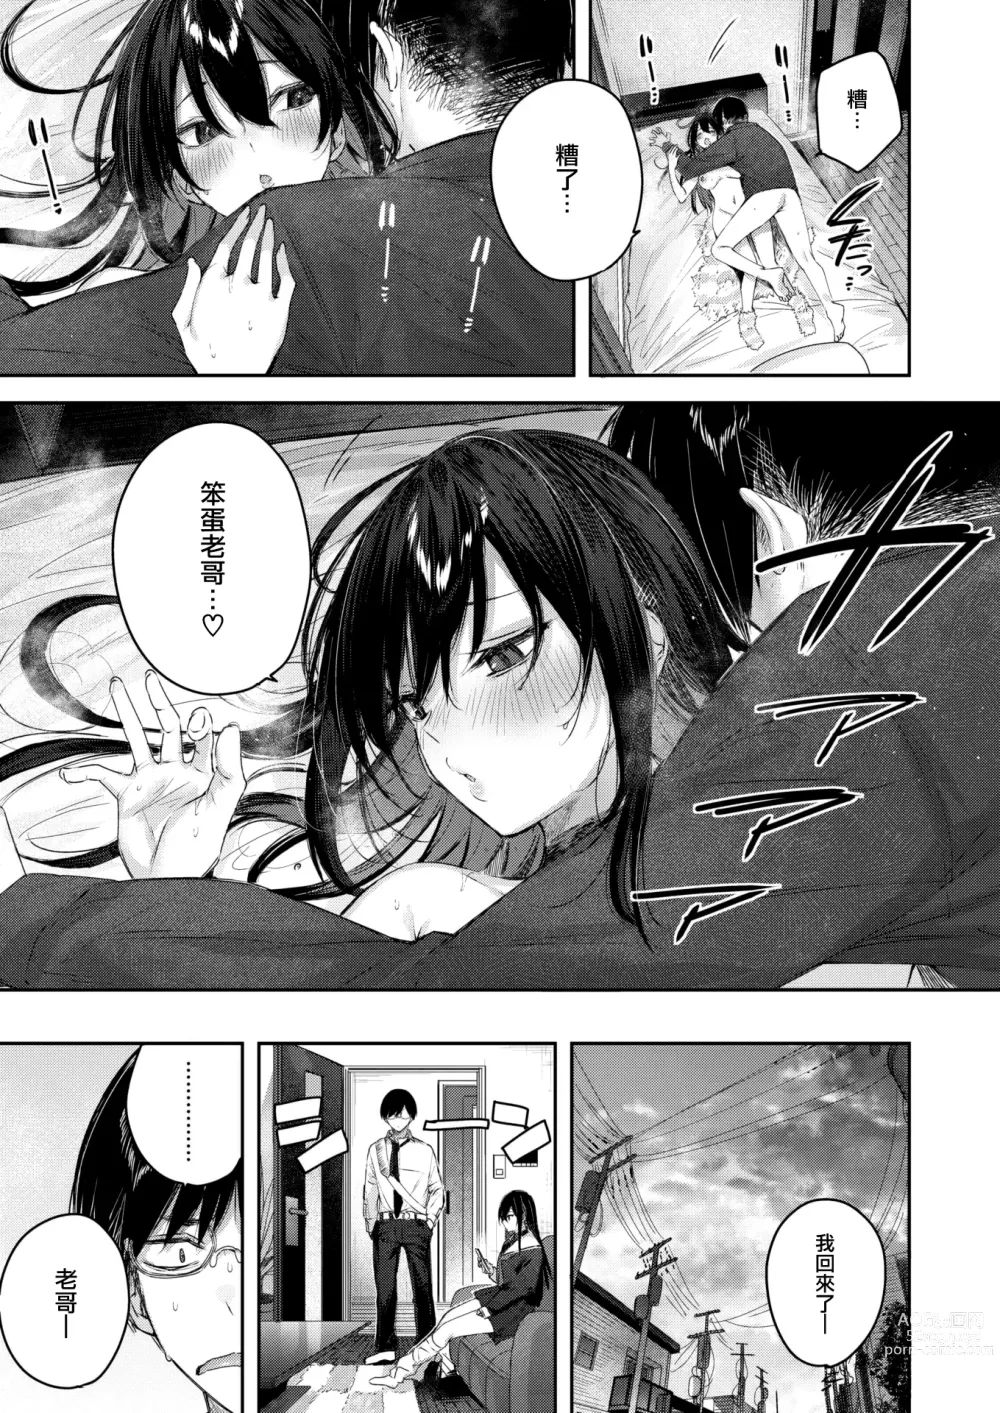 Page 28 of manga Imouto Pudding